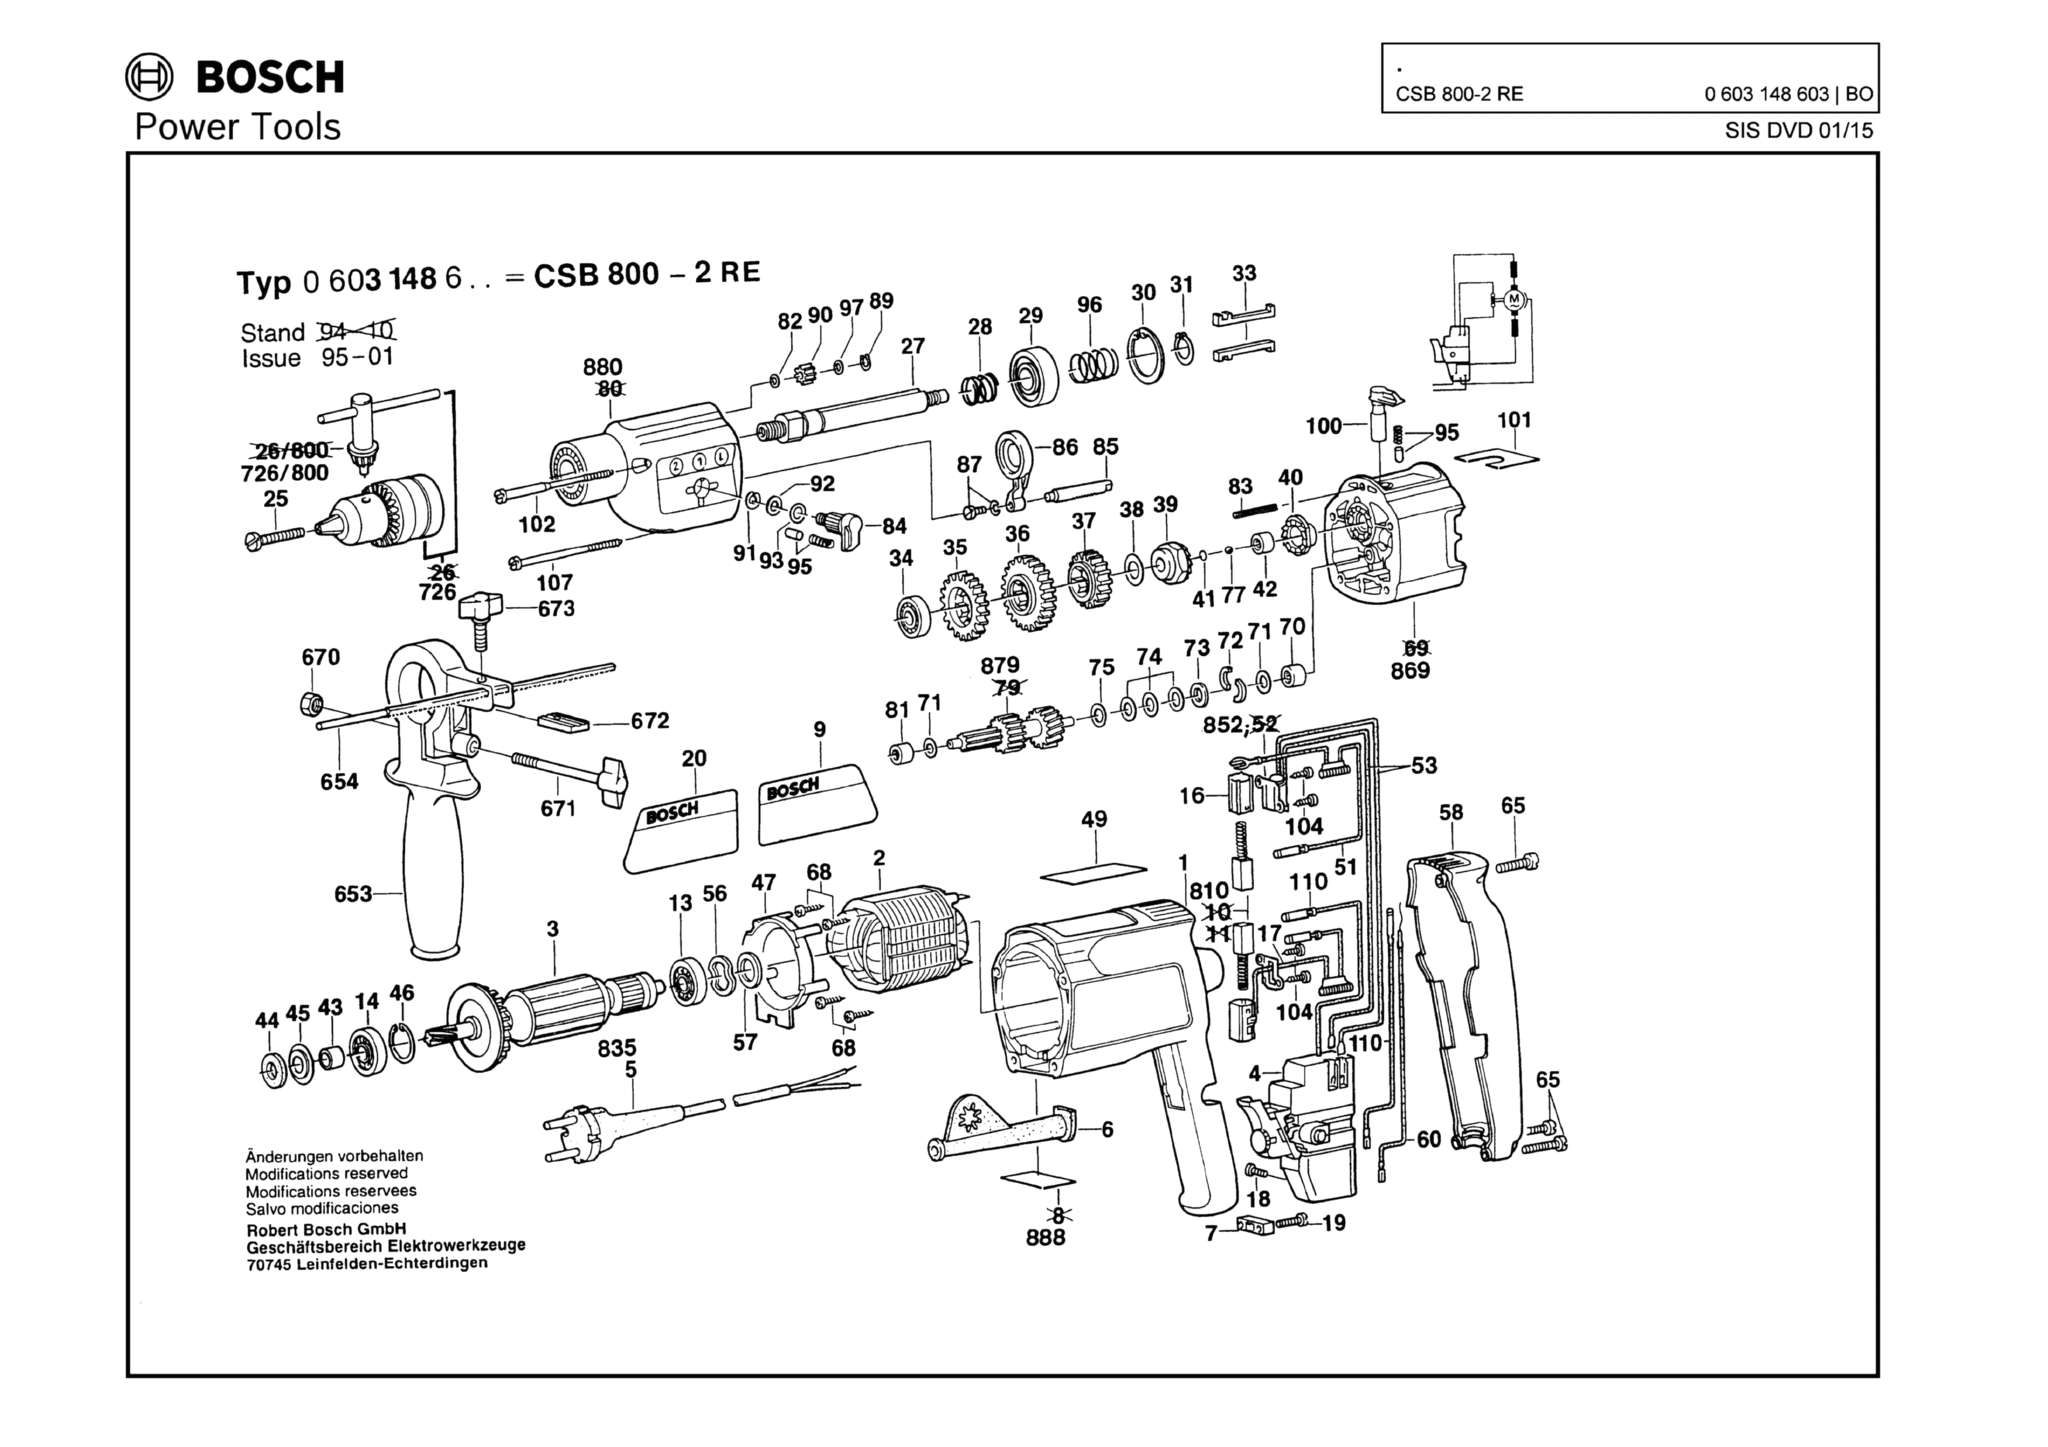 Запчасти, схема и деталировка Bosch CSB 800-2 RE (ТИП 0603148603)